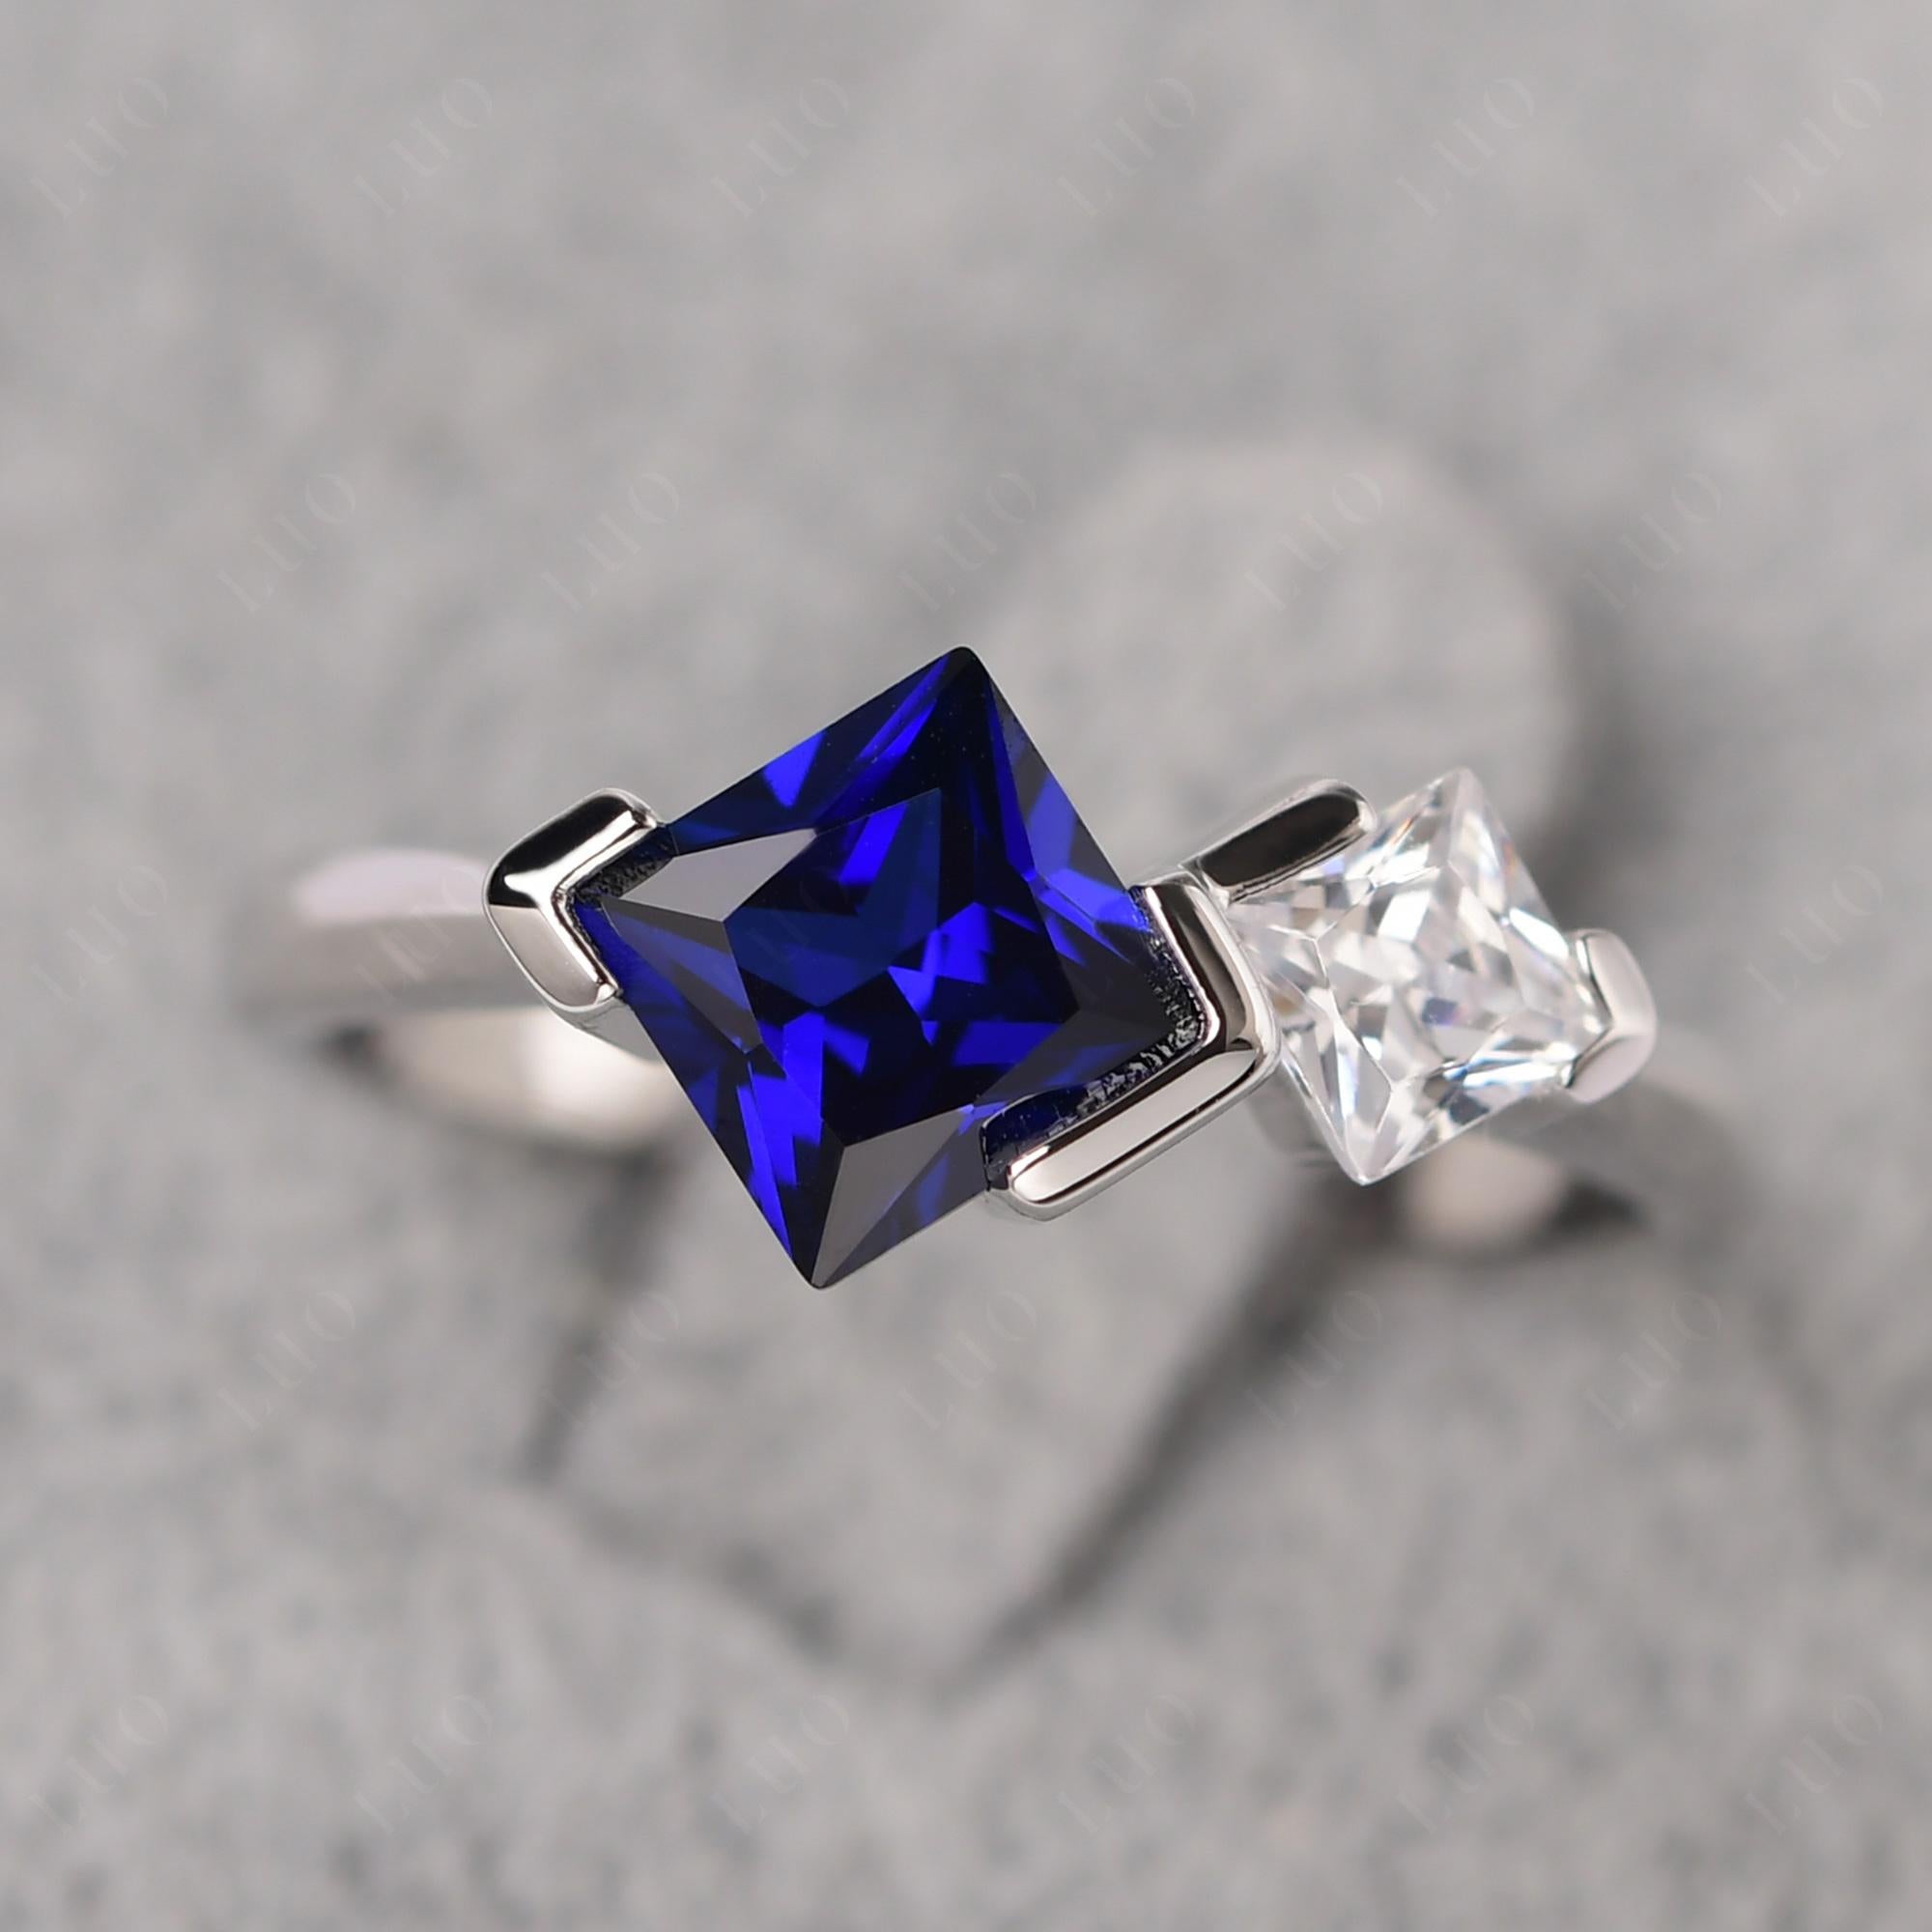 Kite Set 2 Stone Princess Cut Sapphire Ring - LUO Jewelry